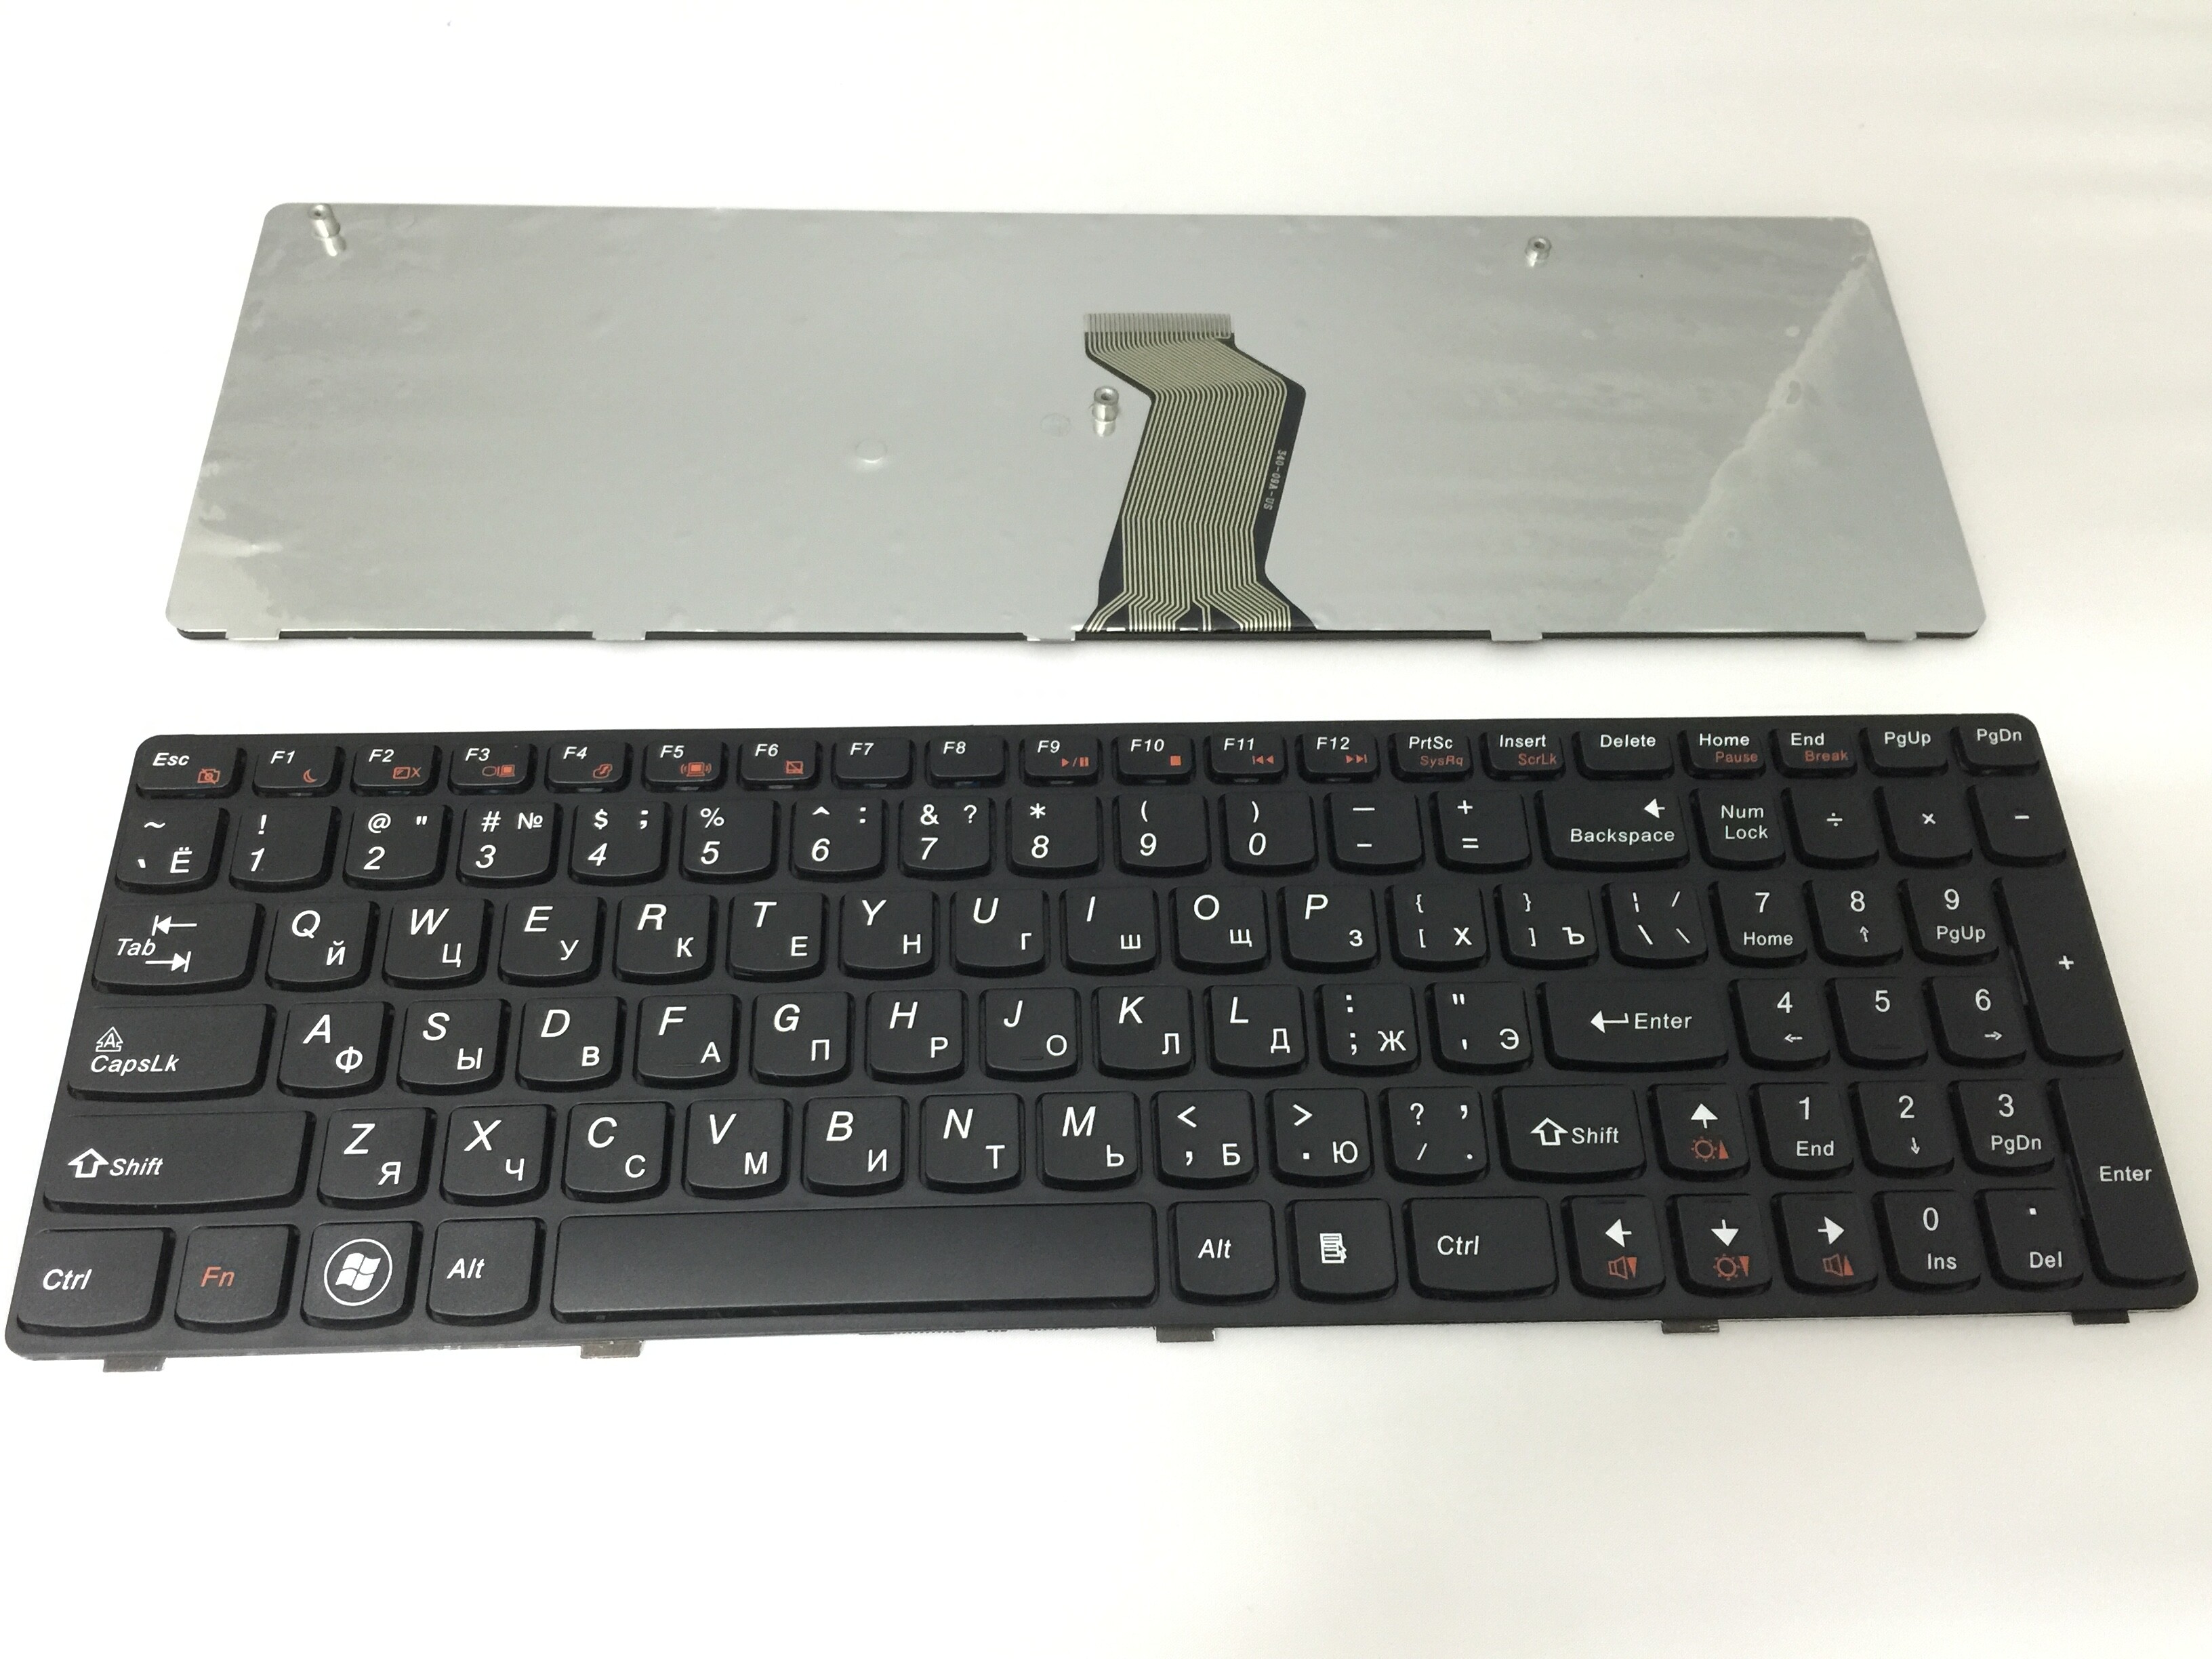 Nouveau clavier russe pour Lenovo G570 Ru Z560 Z560A Z560G Z565 G570AH G570G G575AC G575AL Clavier pour ordinateur portable pour ordinateur portable